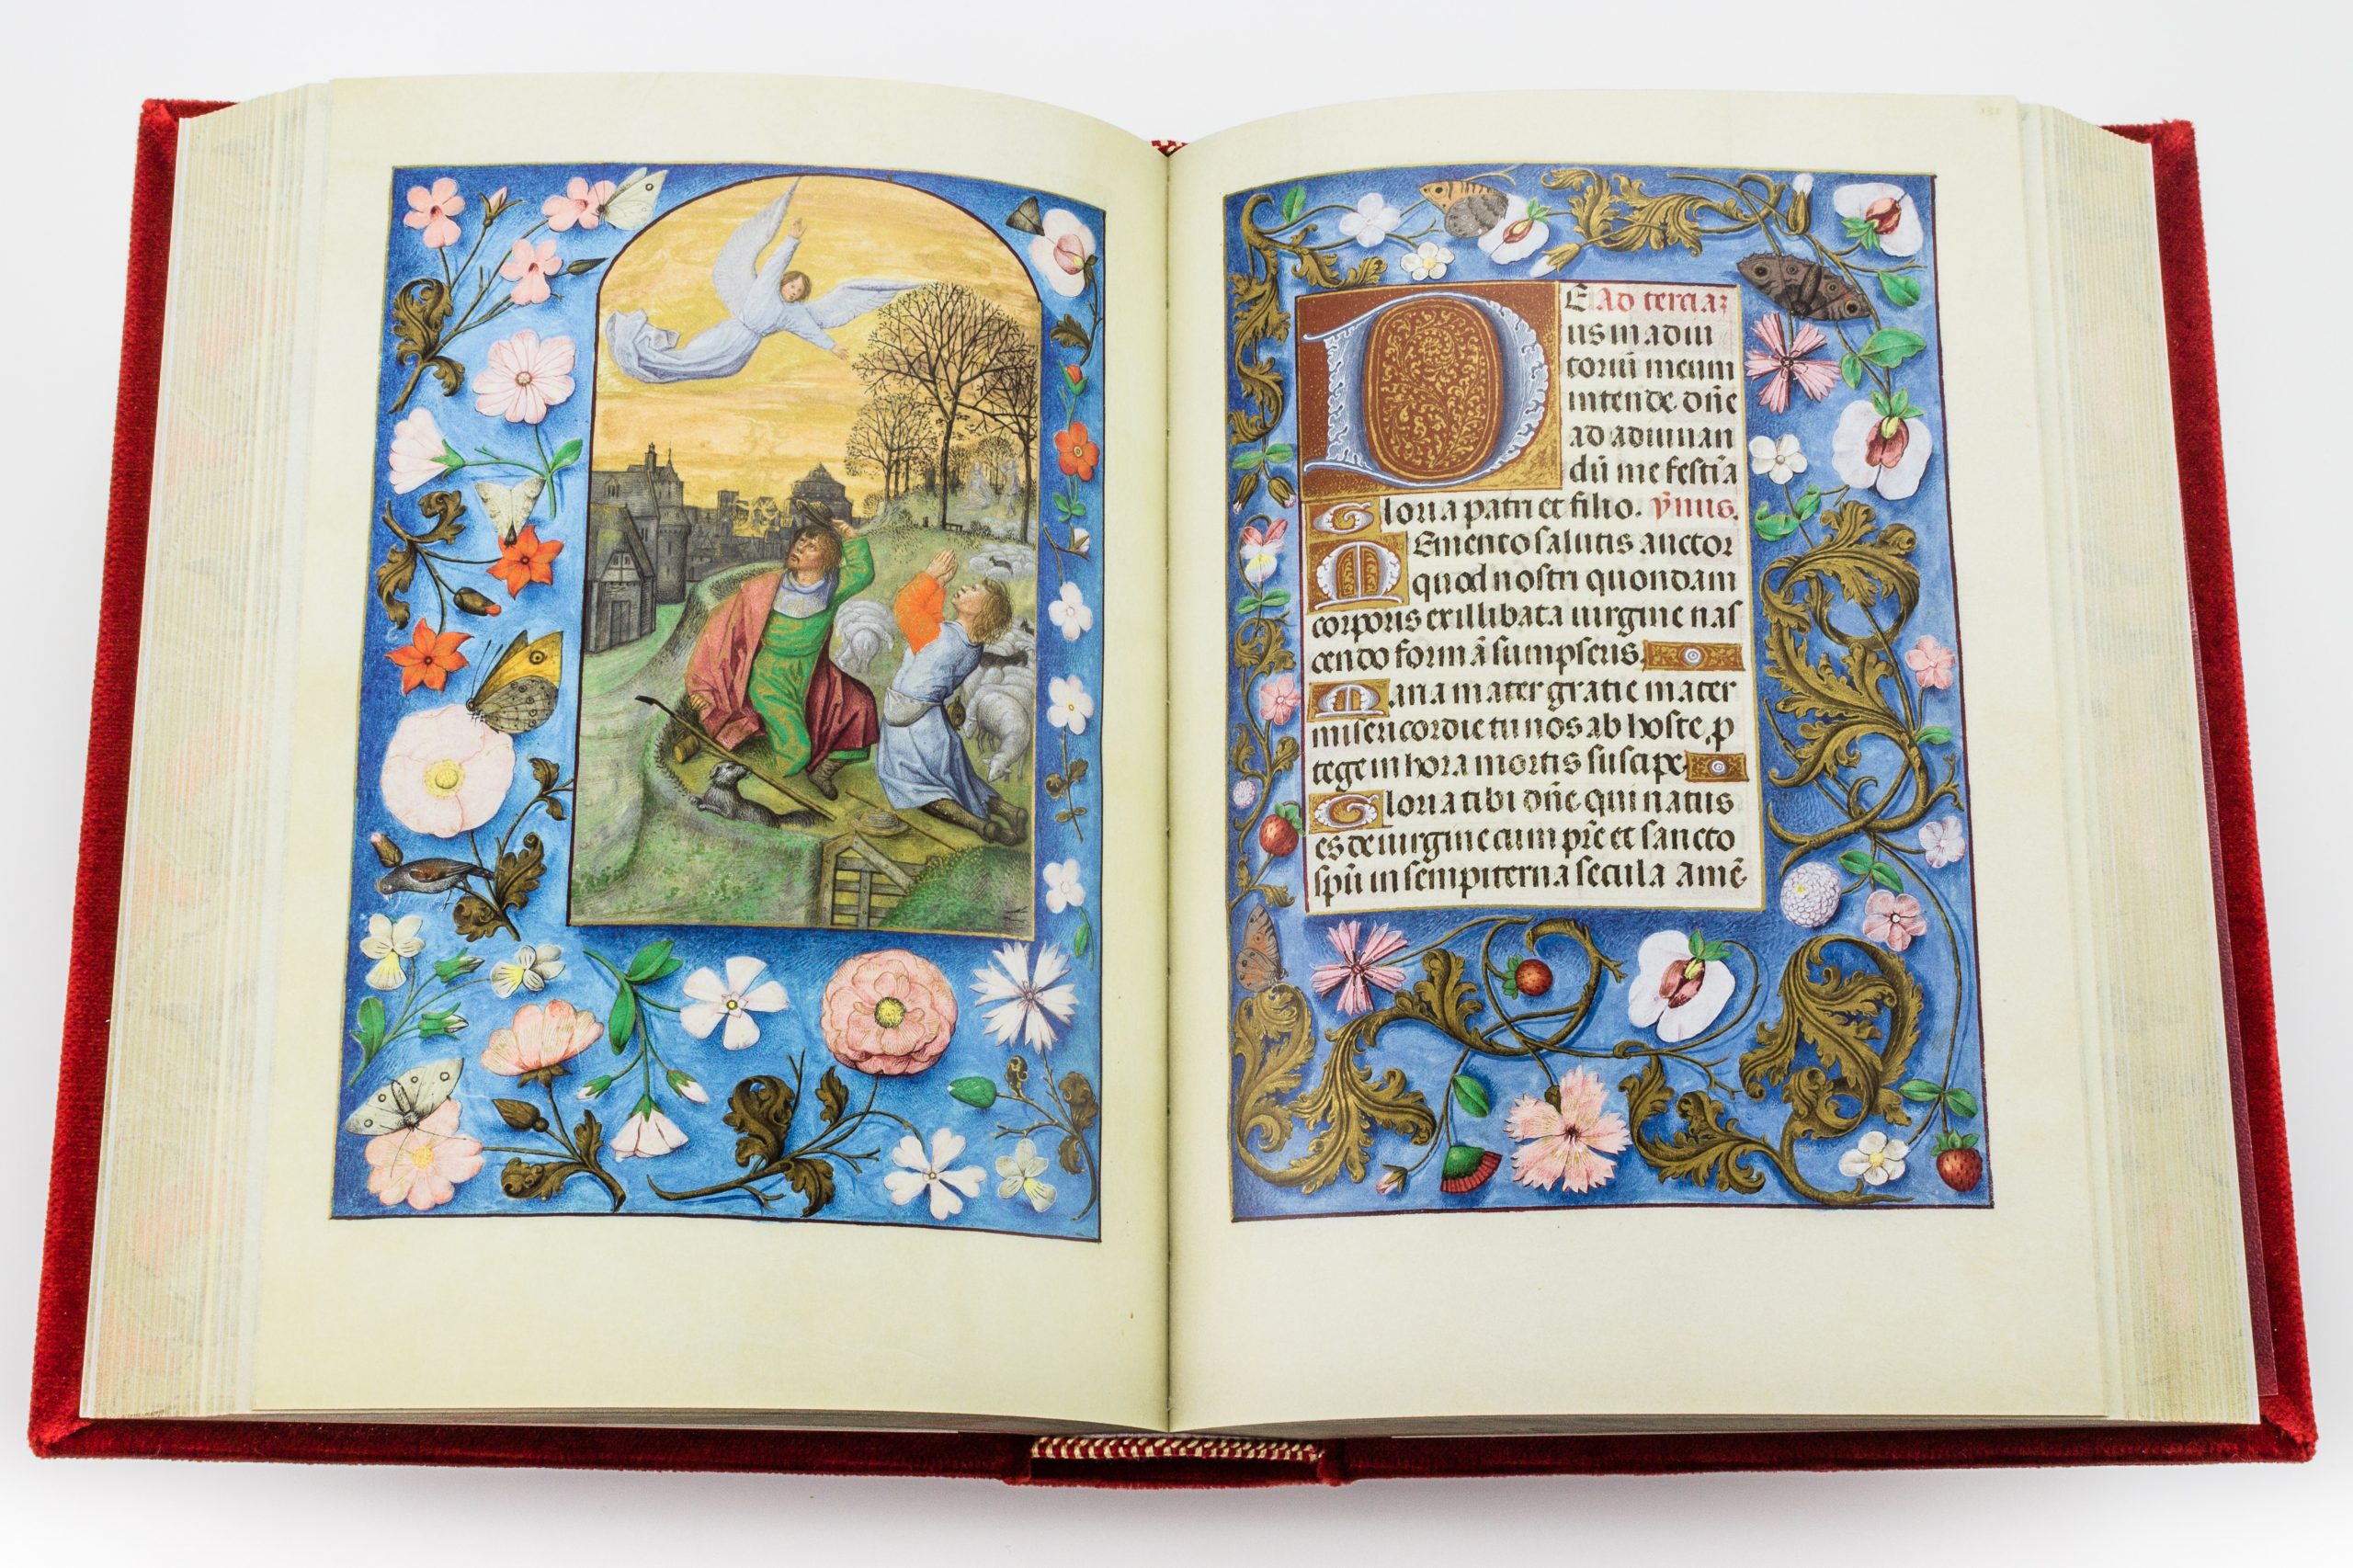 Isabella von Kastilien, Stundenbuch, flämische Meister, book of hours